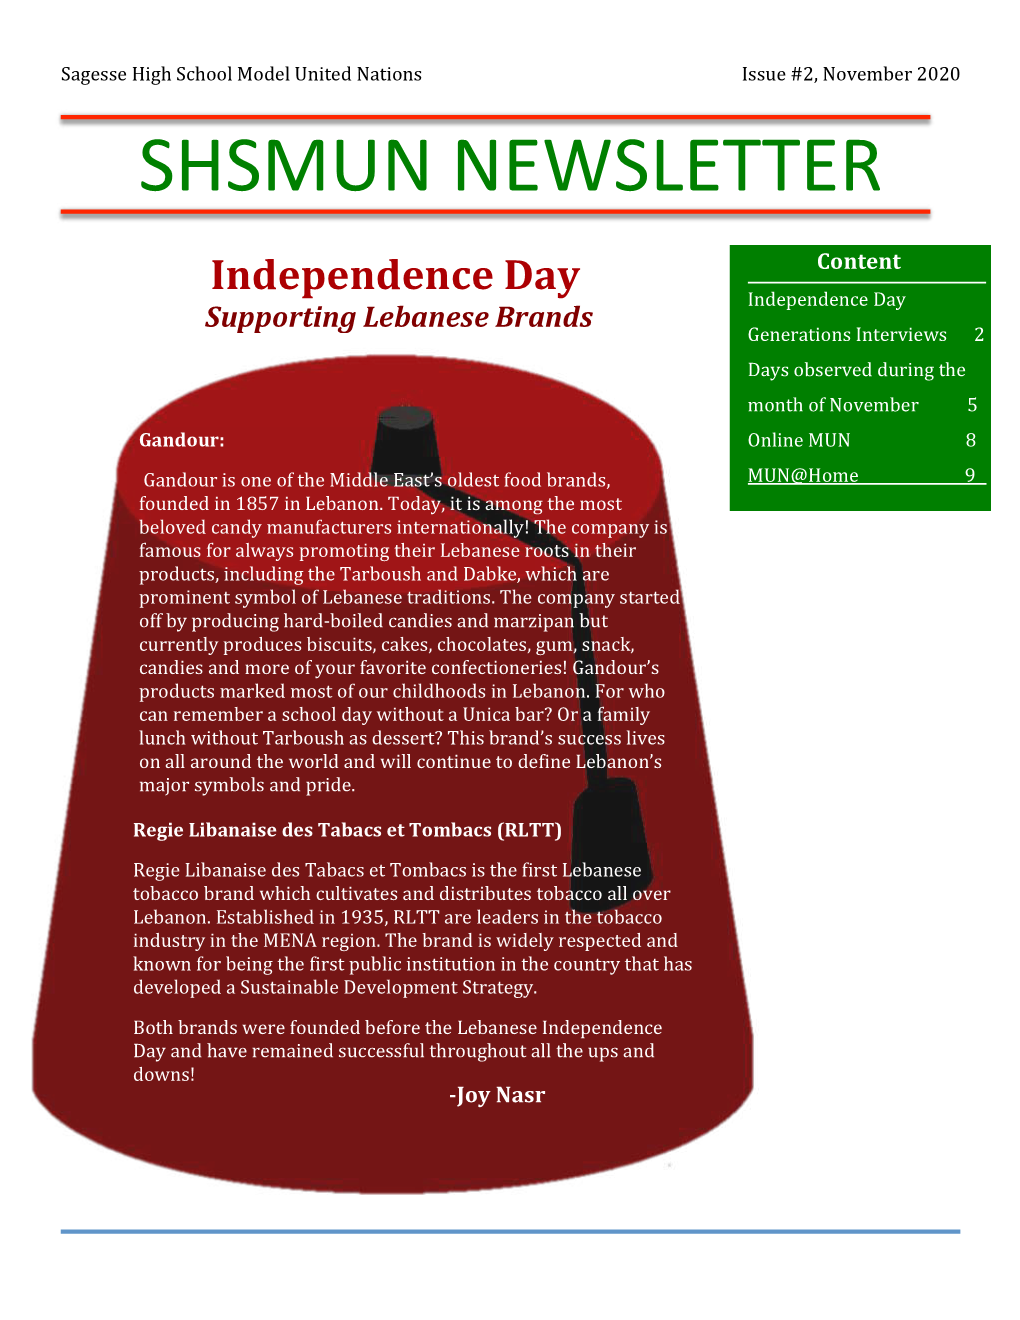 SHSMUN21 Newsletter November Issue